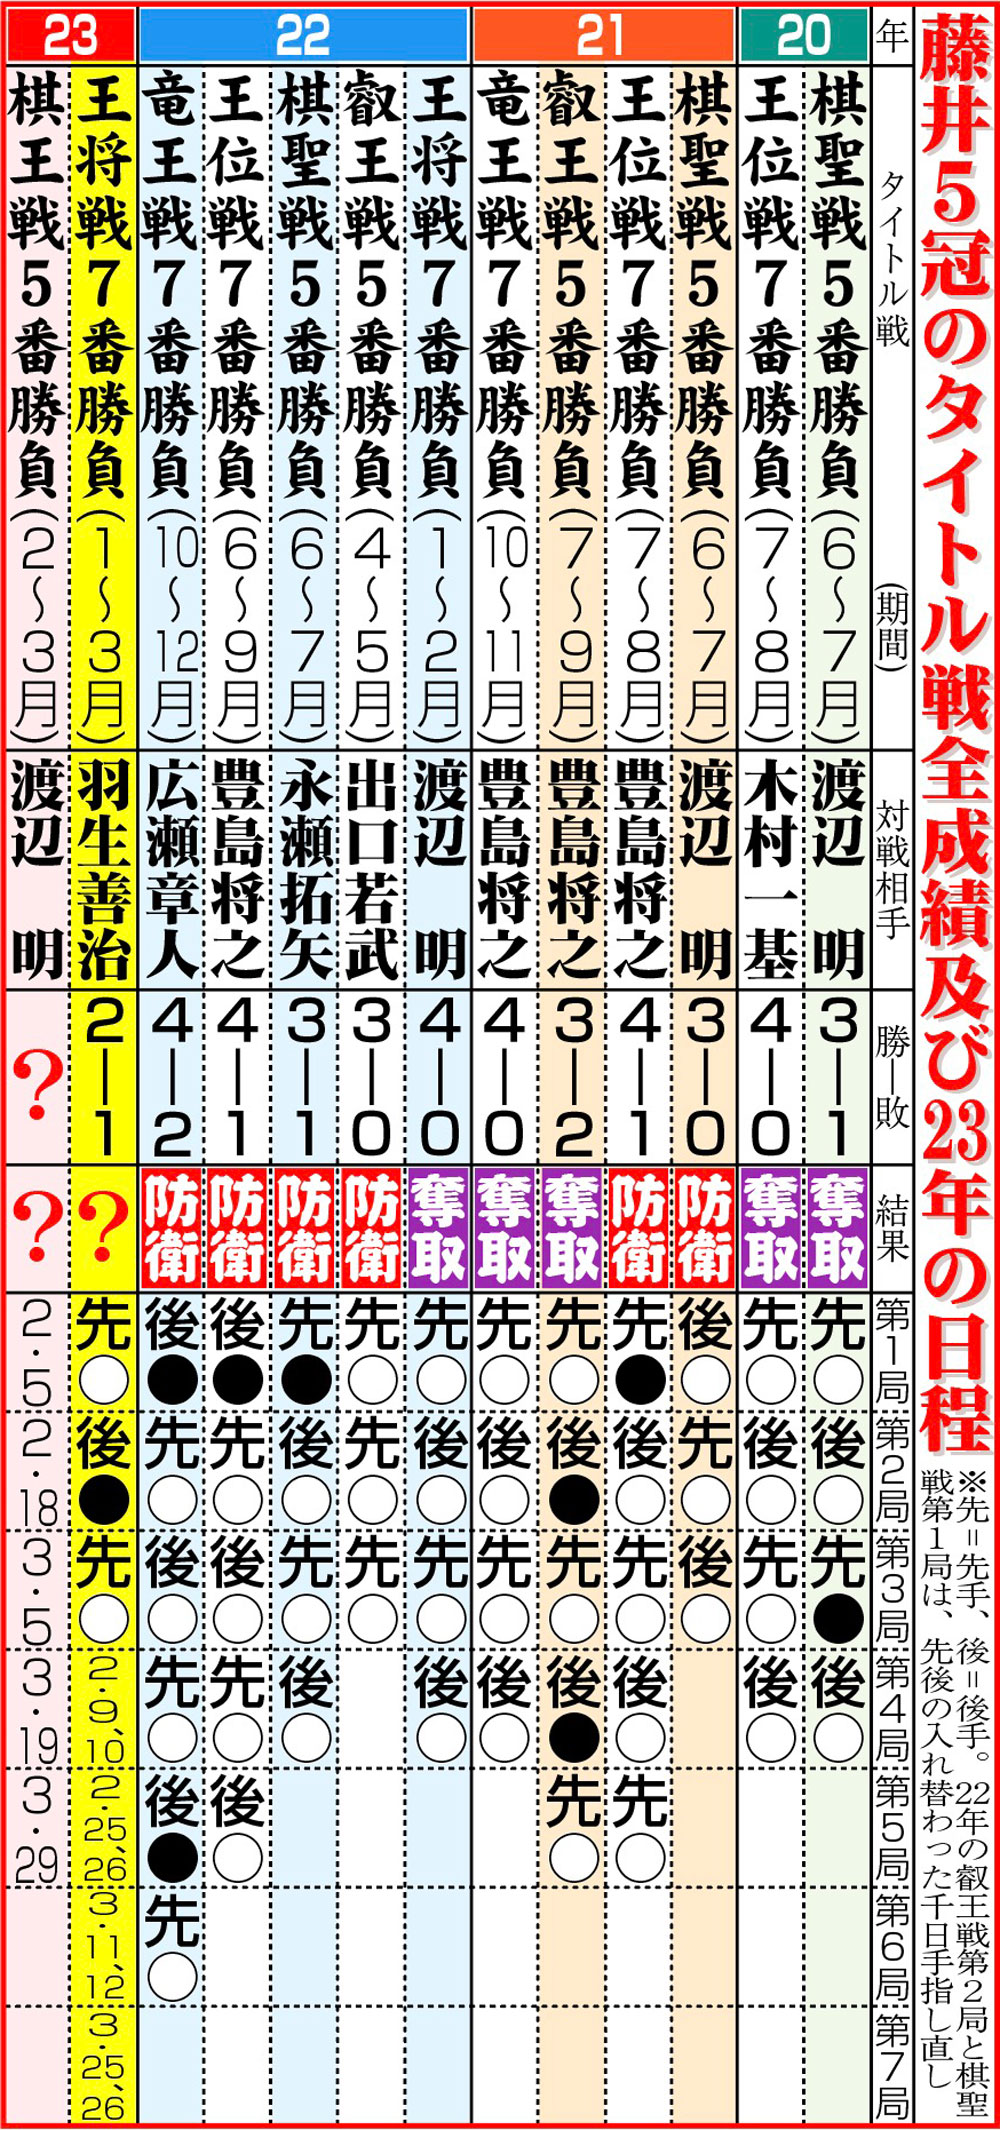 【イラスト】藤井５冠のタイトル戦全成績及び23年の日程